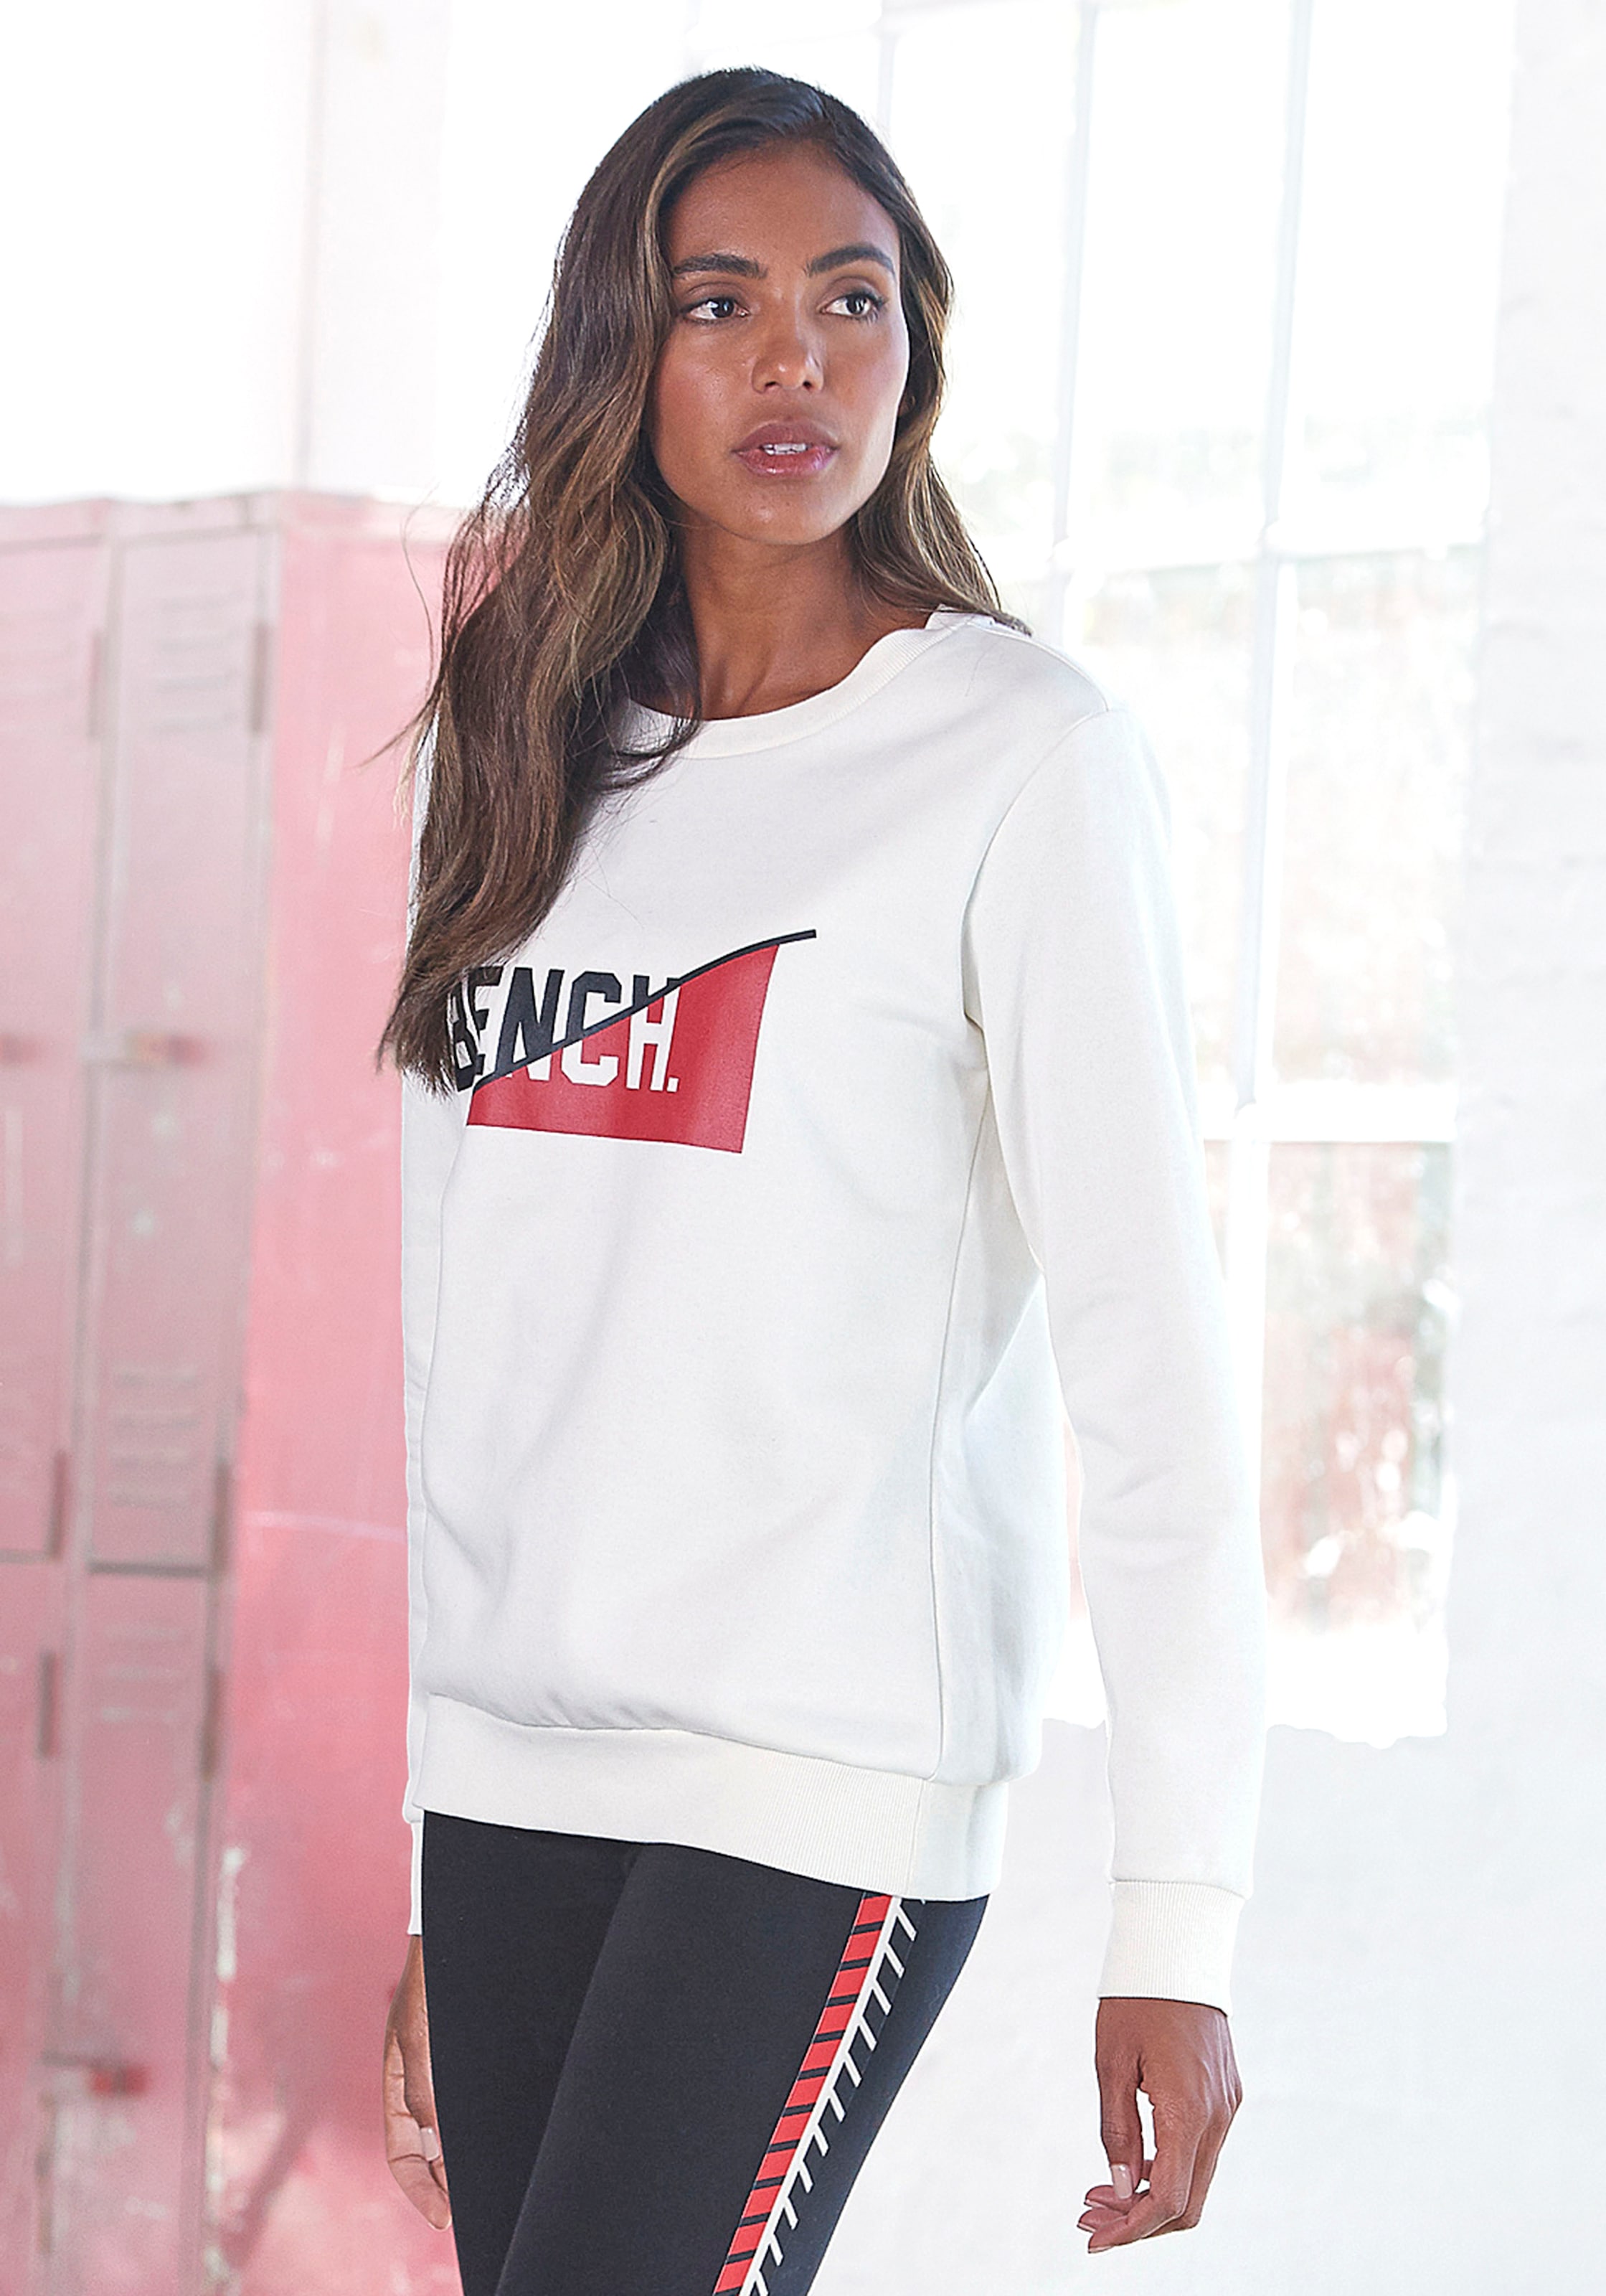 Bench. Sweatshirt, mit frontalem Logodruck, Loungeanzug » LASCANA |  Bademode, Unterwäsche & Lingerie online kaufen